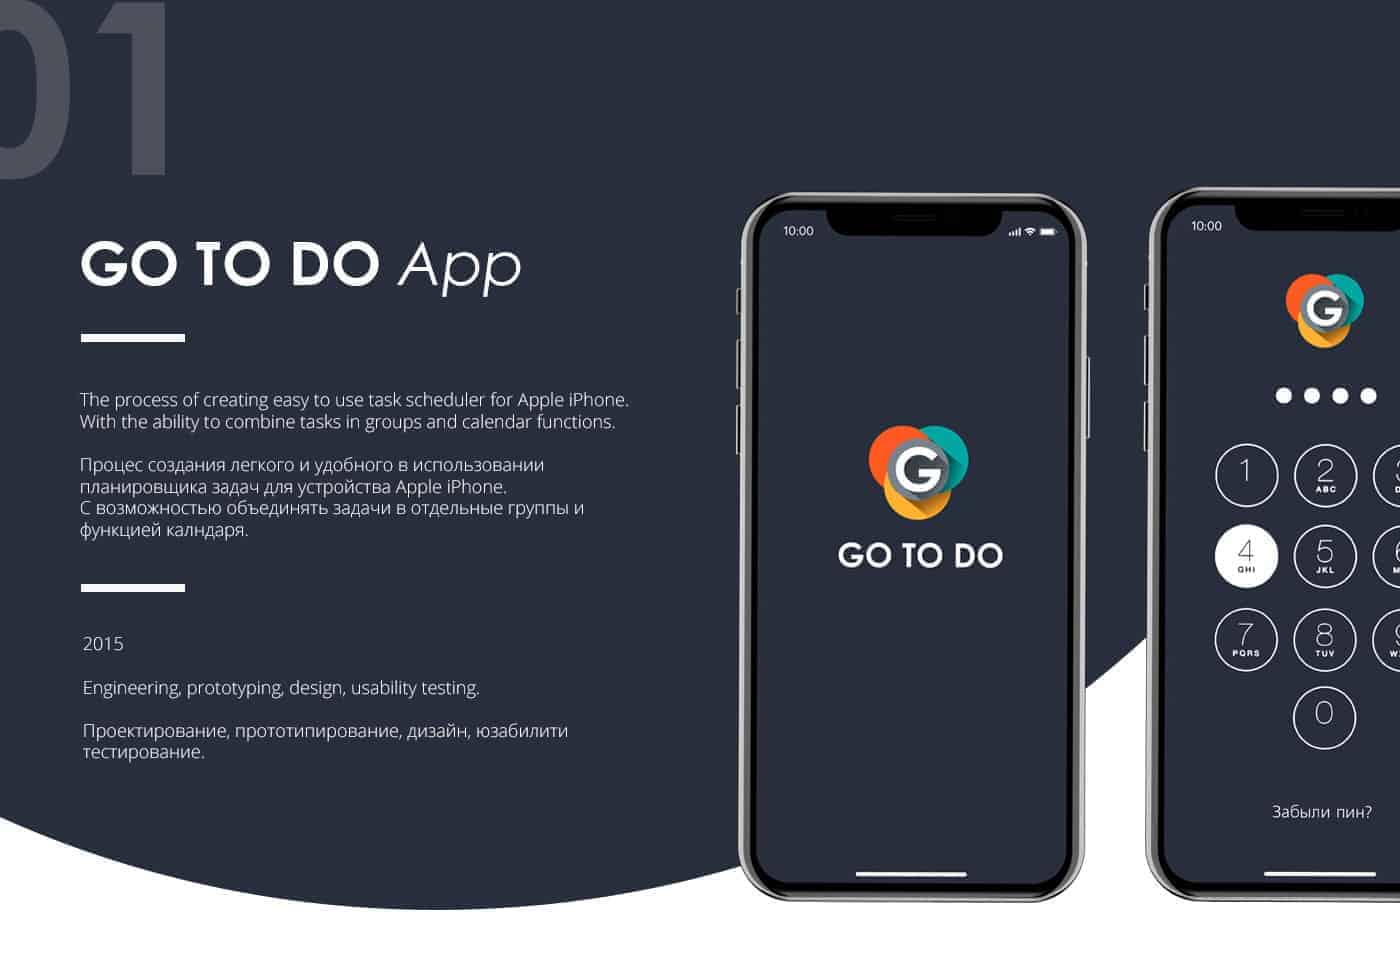 GO TO DO mobile app